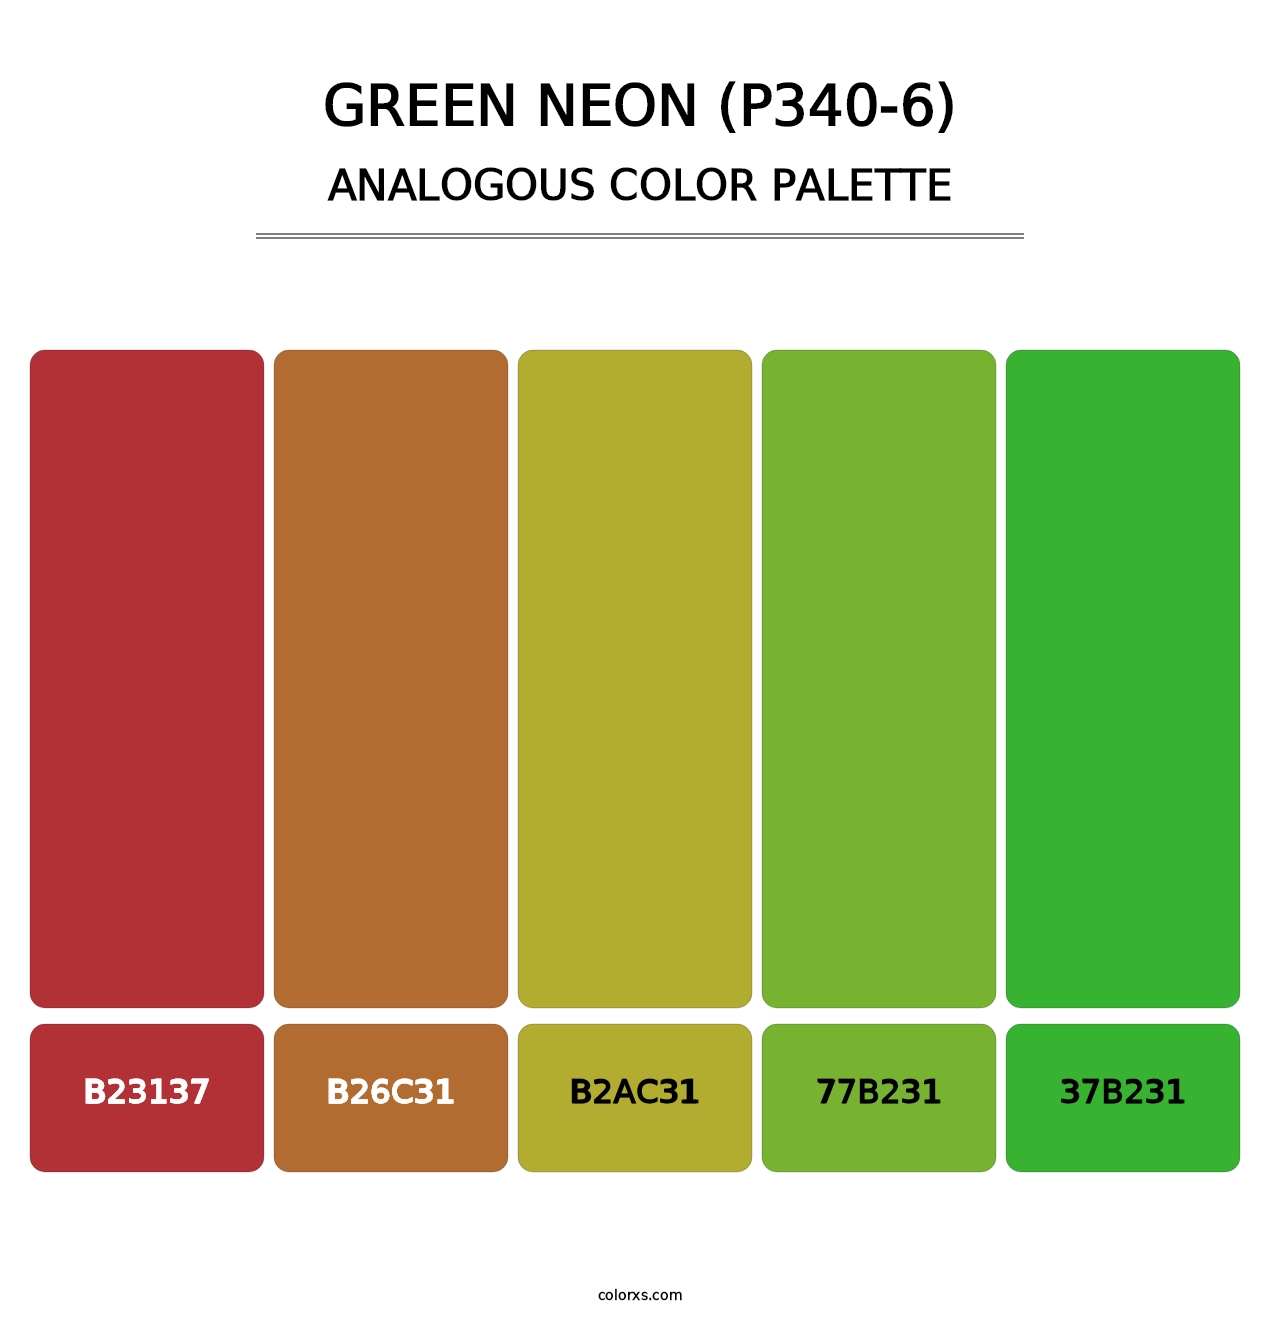 Green Neon (P340-6) - Analogous Color Palette